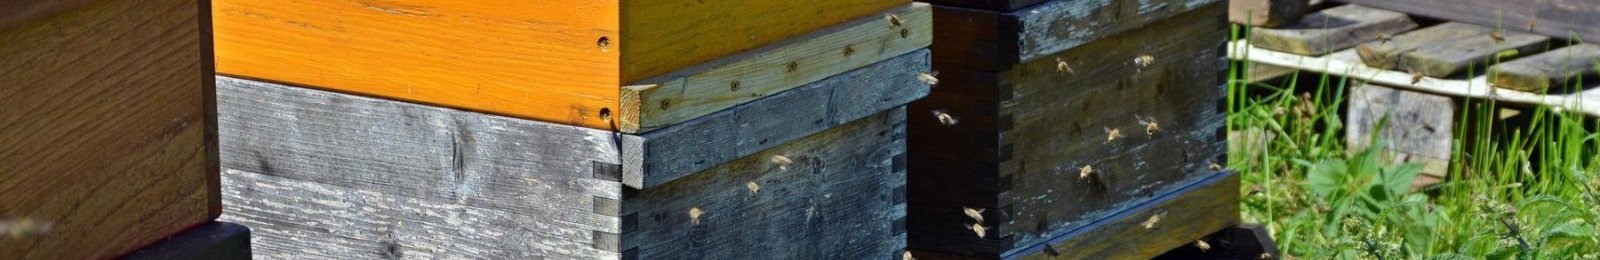 Visite d’un rucher sur Simiane la Rotonde